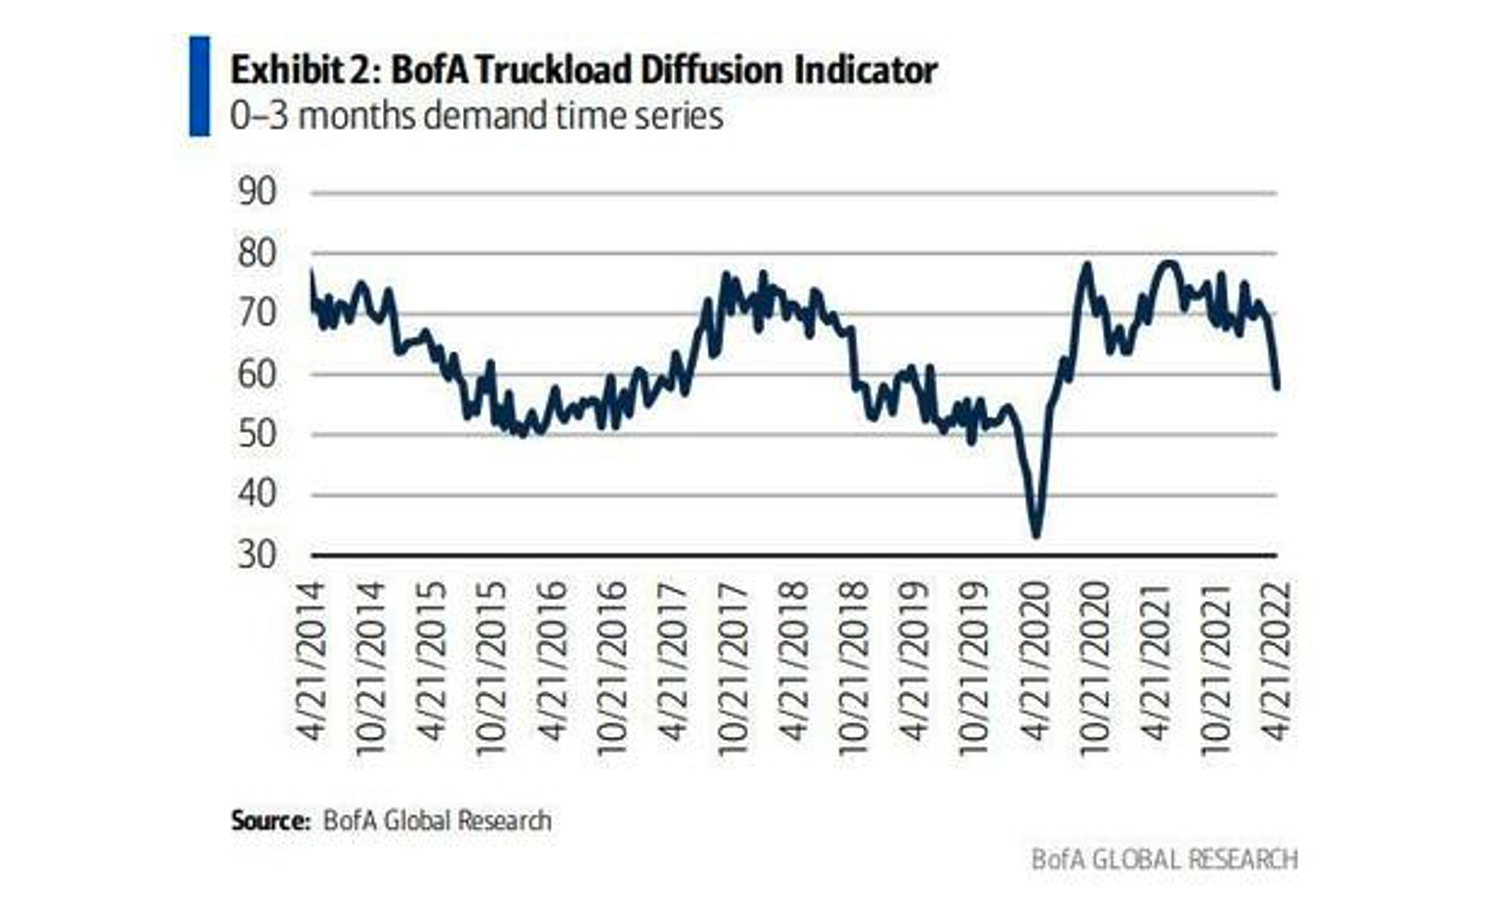 BofA Truckload Diffusion Indicator